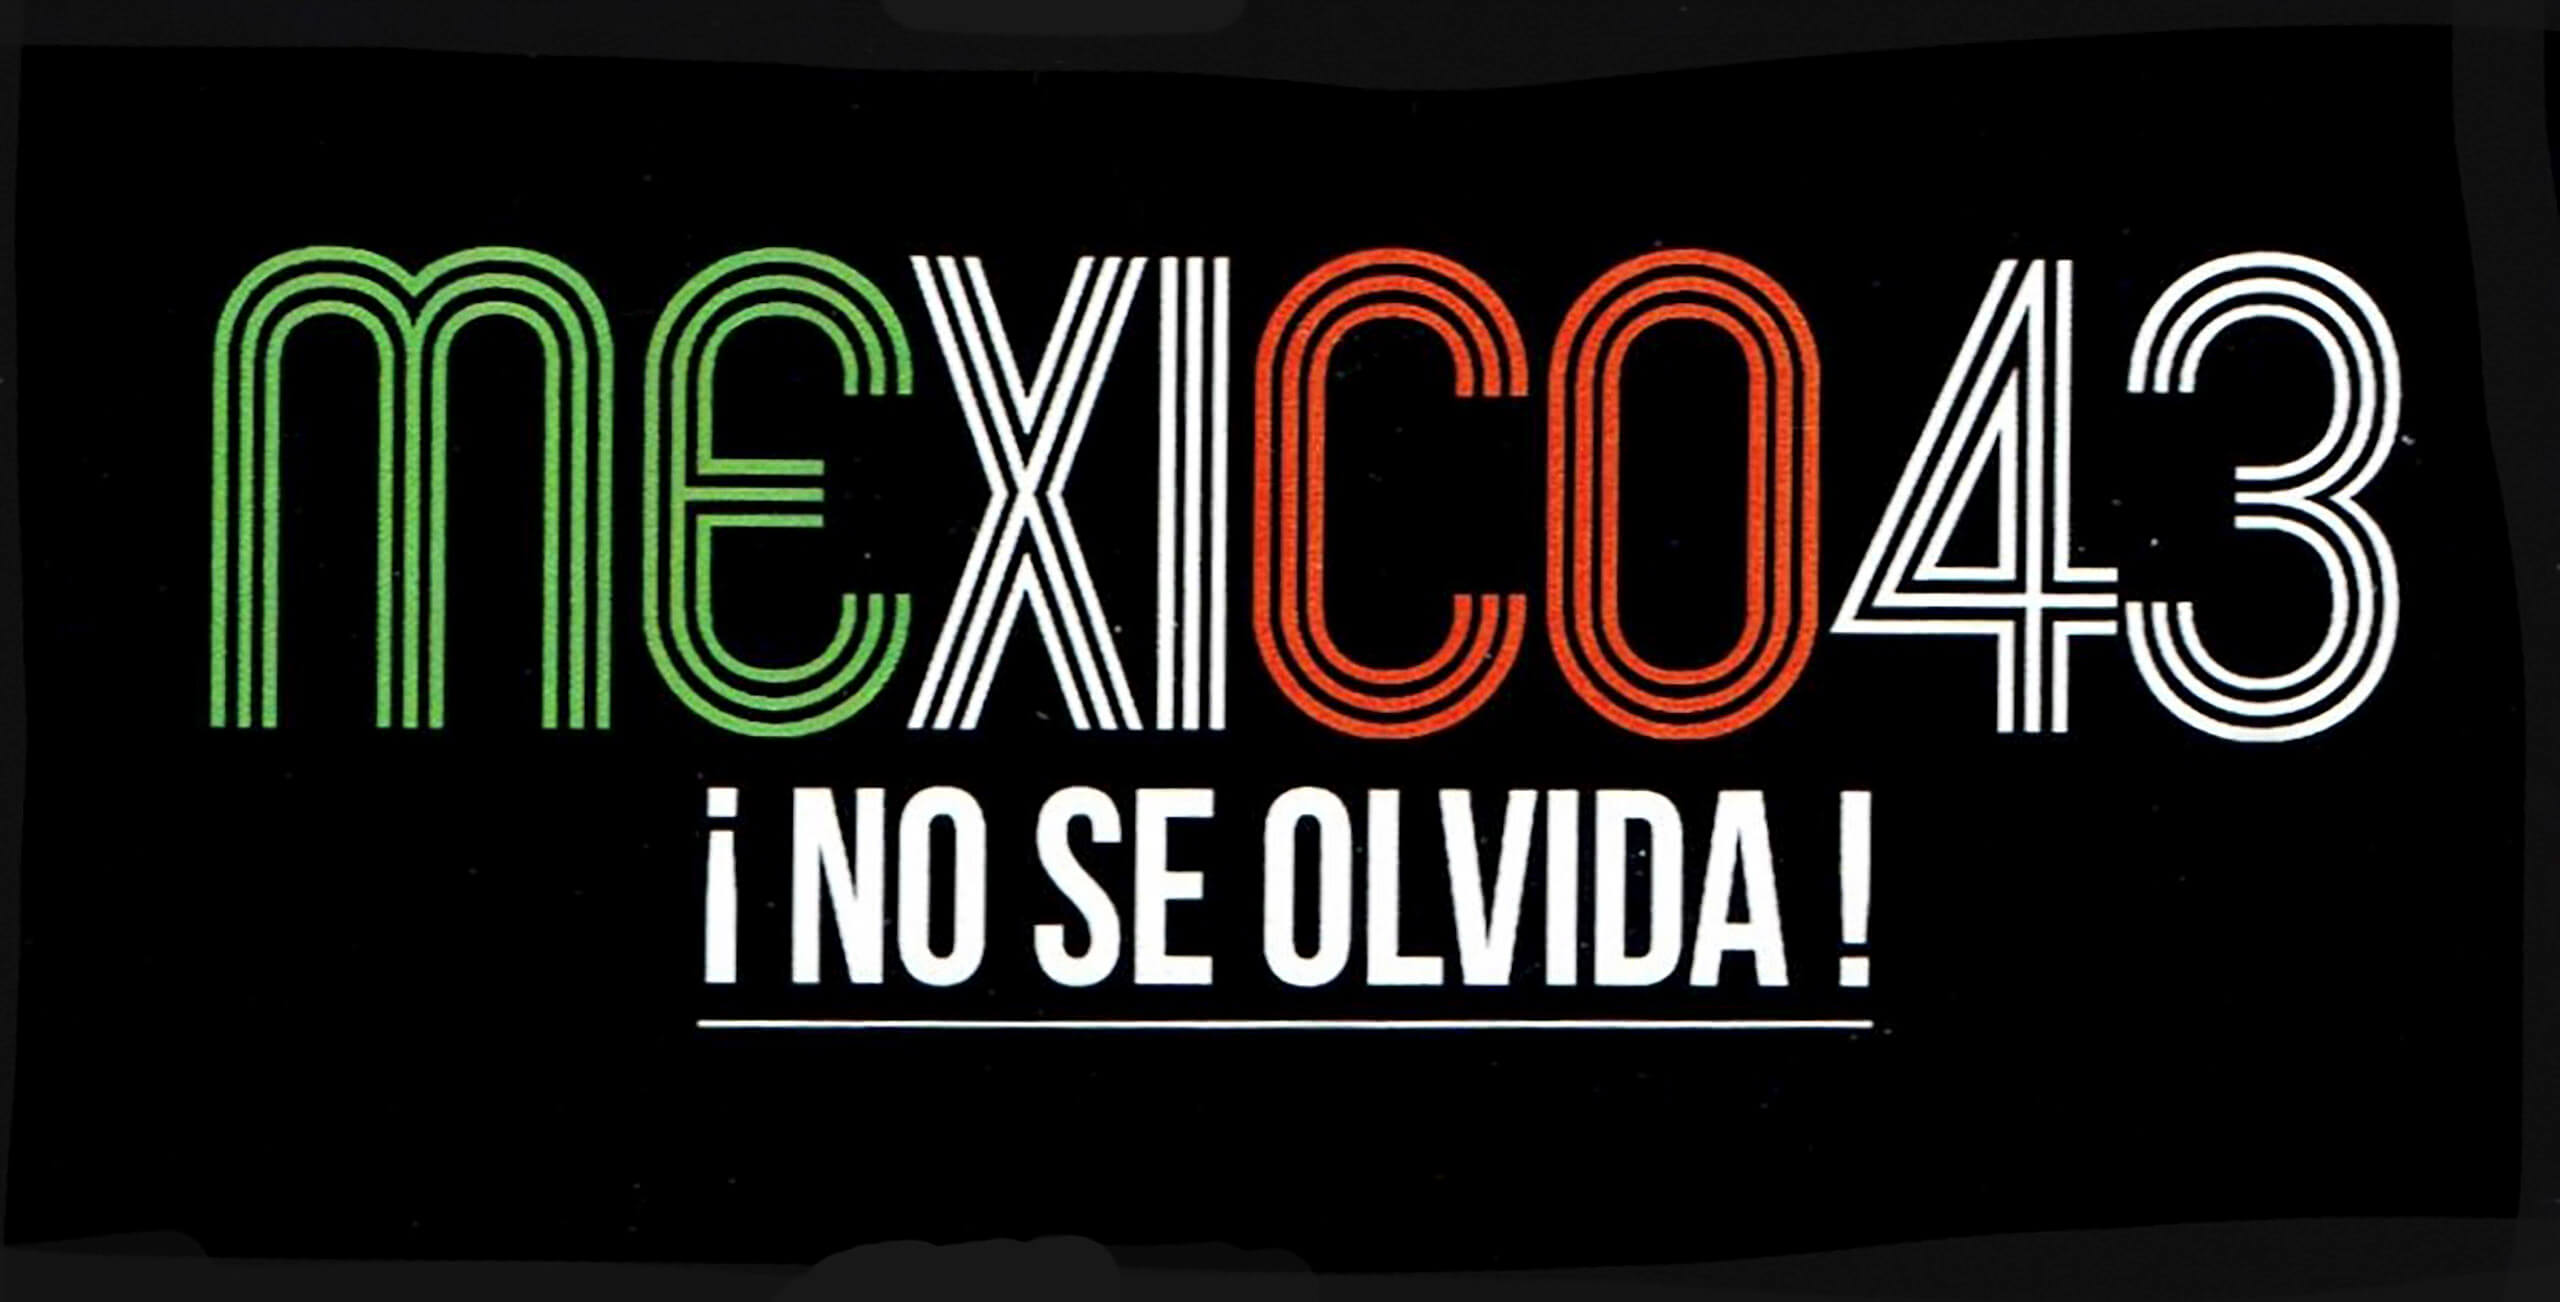 Imágenes documentales de protestas y producciones gráficas de denuncia por la desaparición de los 43 normalistas de Ayotzinapa | La demanda inasumible. Imaginación social y autogestión gráfica en México, 1968-2018 | Museo Amparo, Puebla